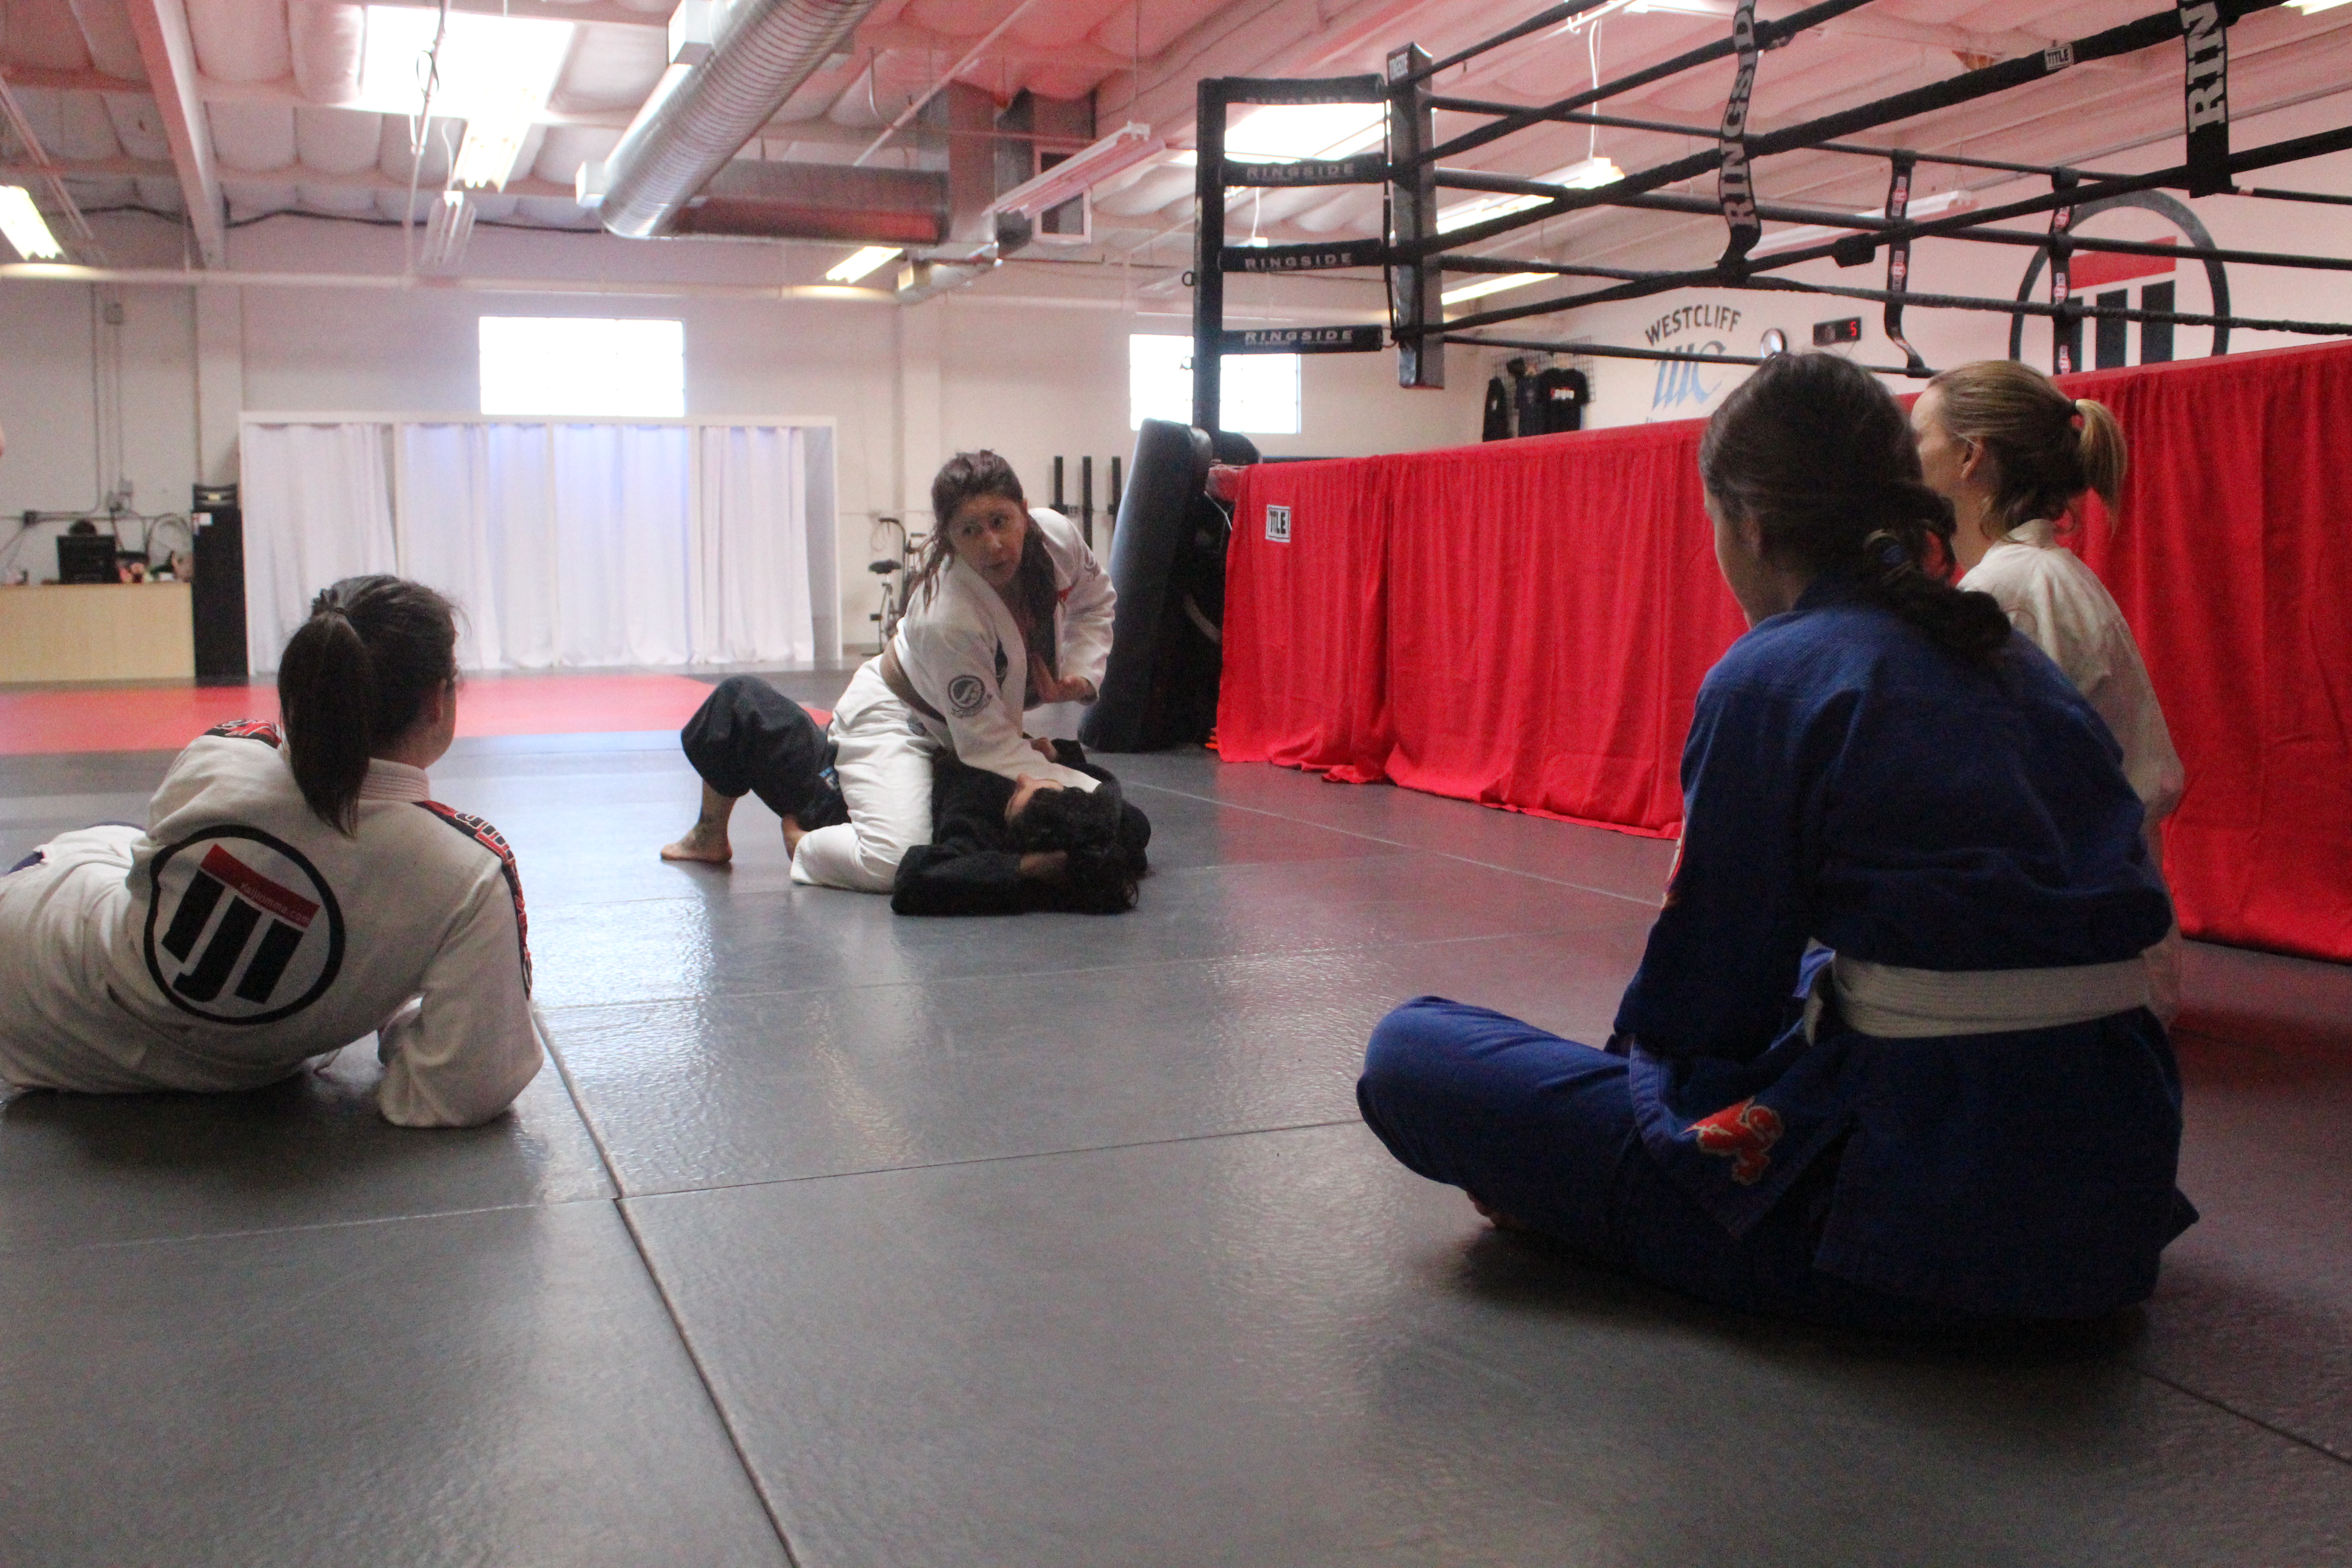 Teaching the Women's Jiu Jitsu Class